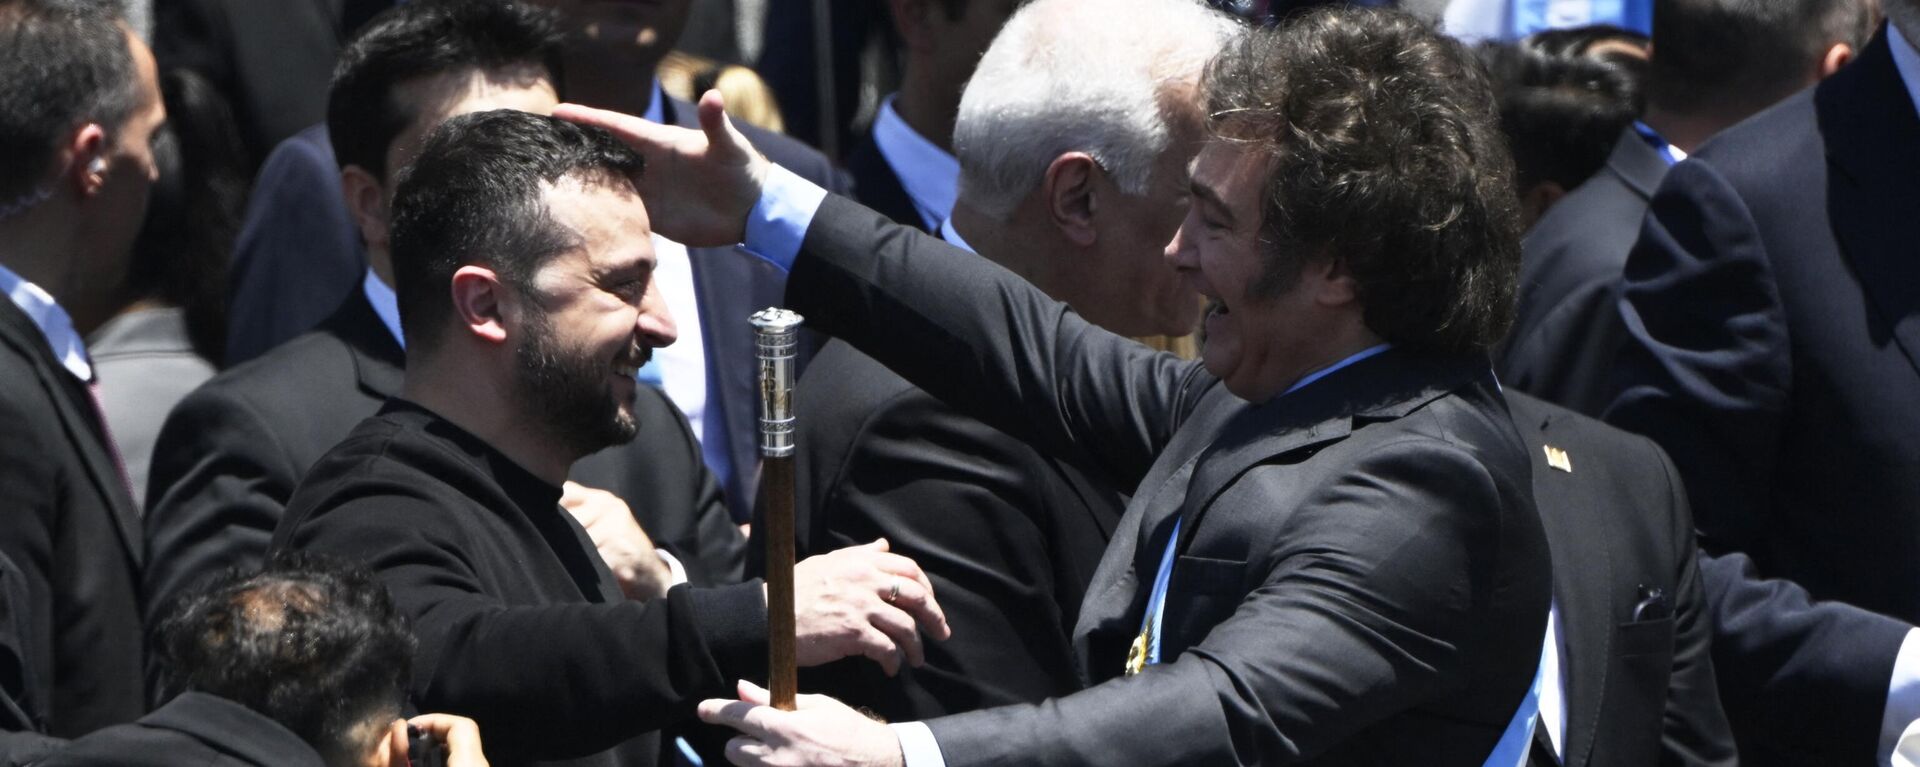 O novo presidente da Argentina, Javier Milei (à direita), é saudado pelo presidente da Ucrânia, Vladimir Zelensky, após fazer seu discurso inaugural diante da multidão, na cerimônia de posse no Congresso, em Buenos Aires, em 10 de dezembro de 2023 - Sputnik Brasil, 1920, 10.12.2023